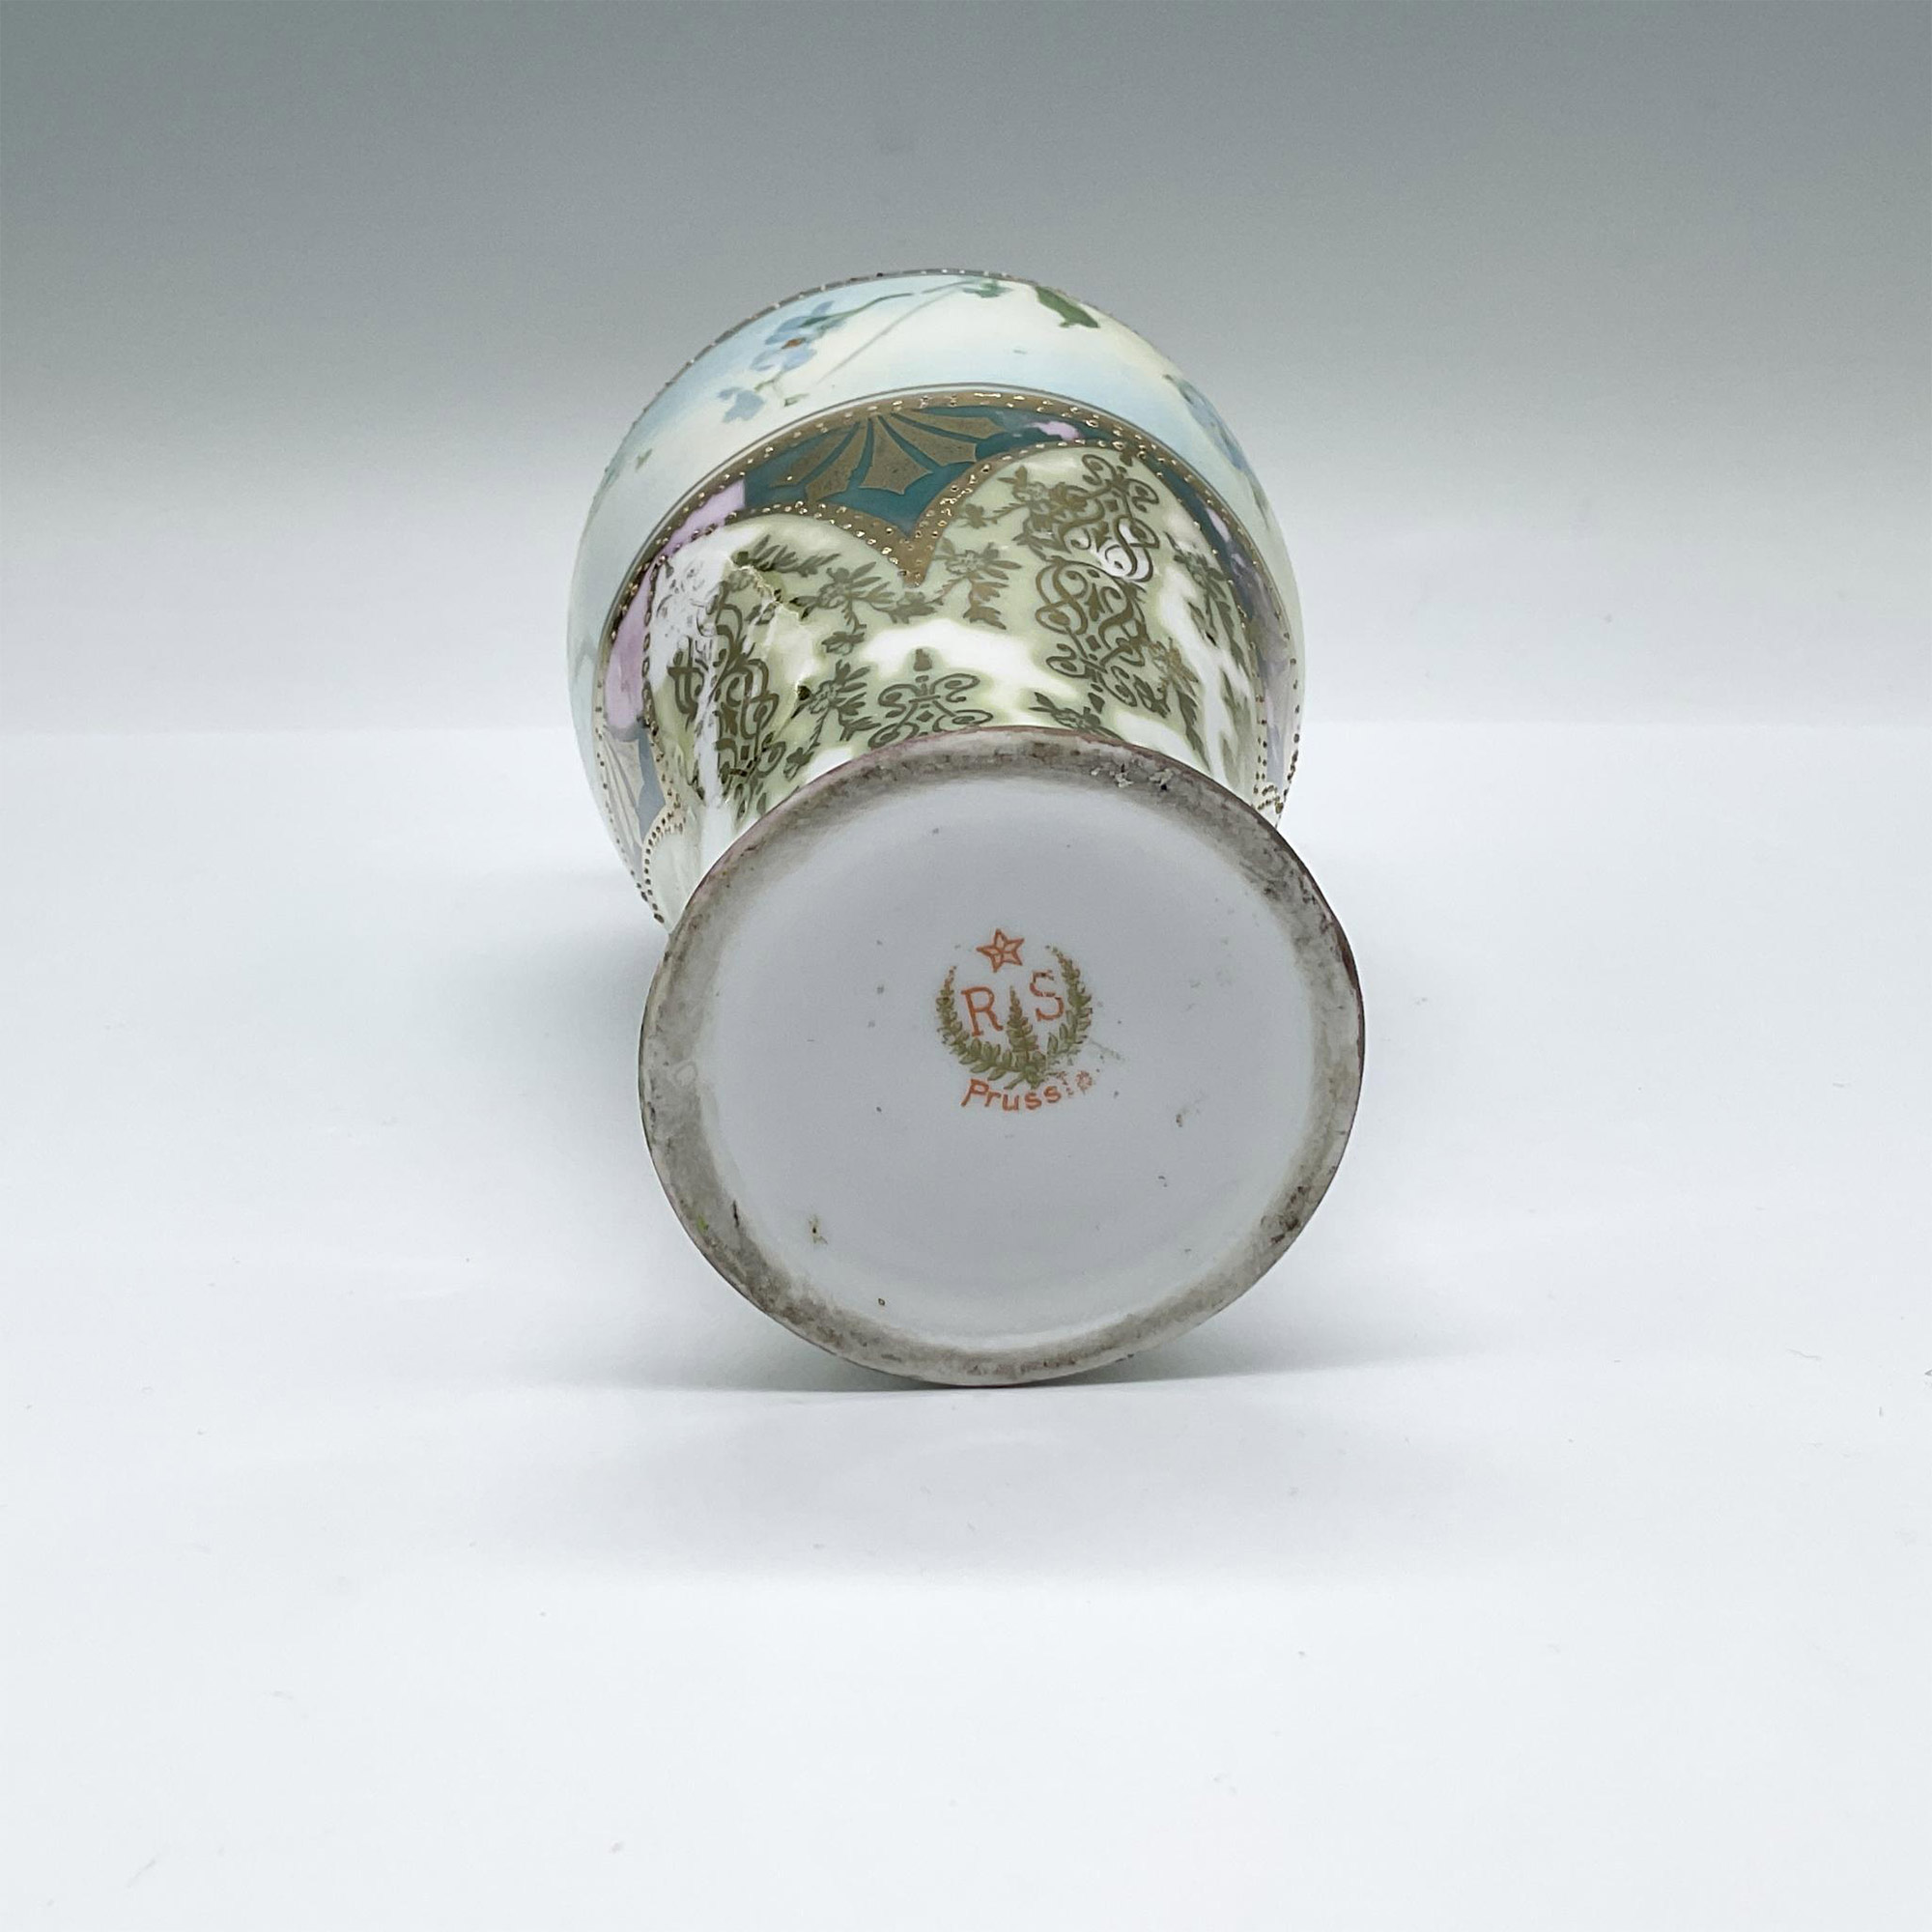 R.S. Prussia Ornate Porcelain Vase - Image 3 of 3